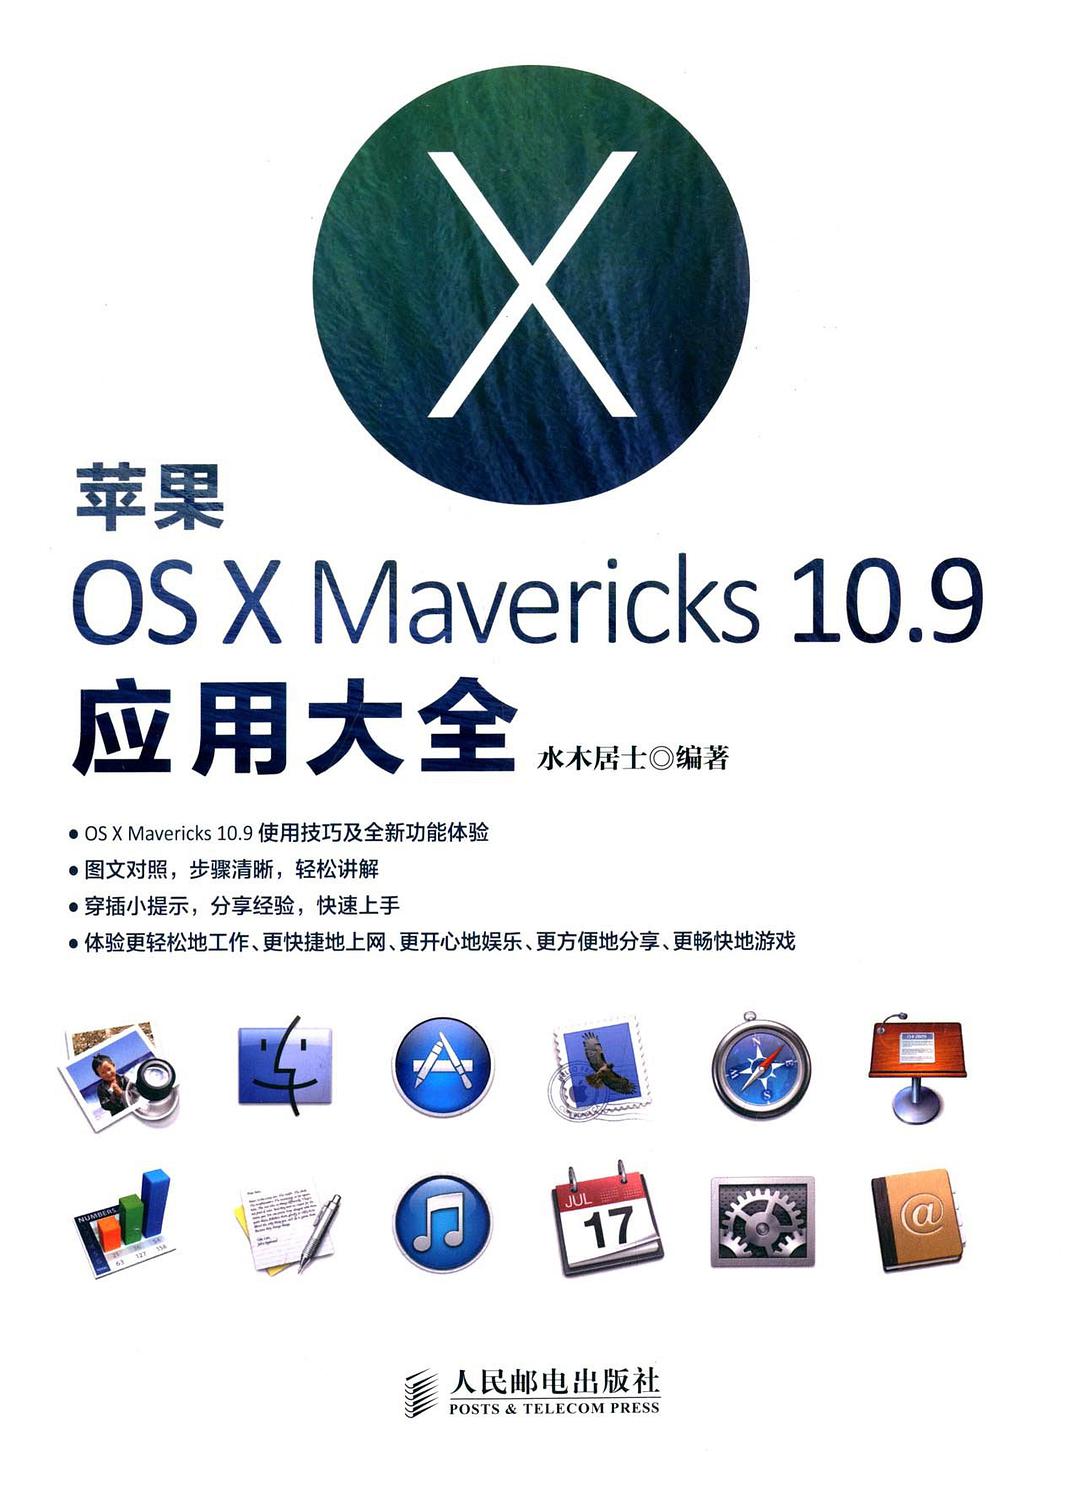 苹果OS X Mavericks 10.9应用大全